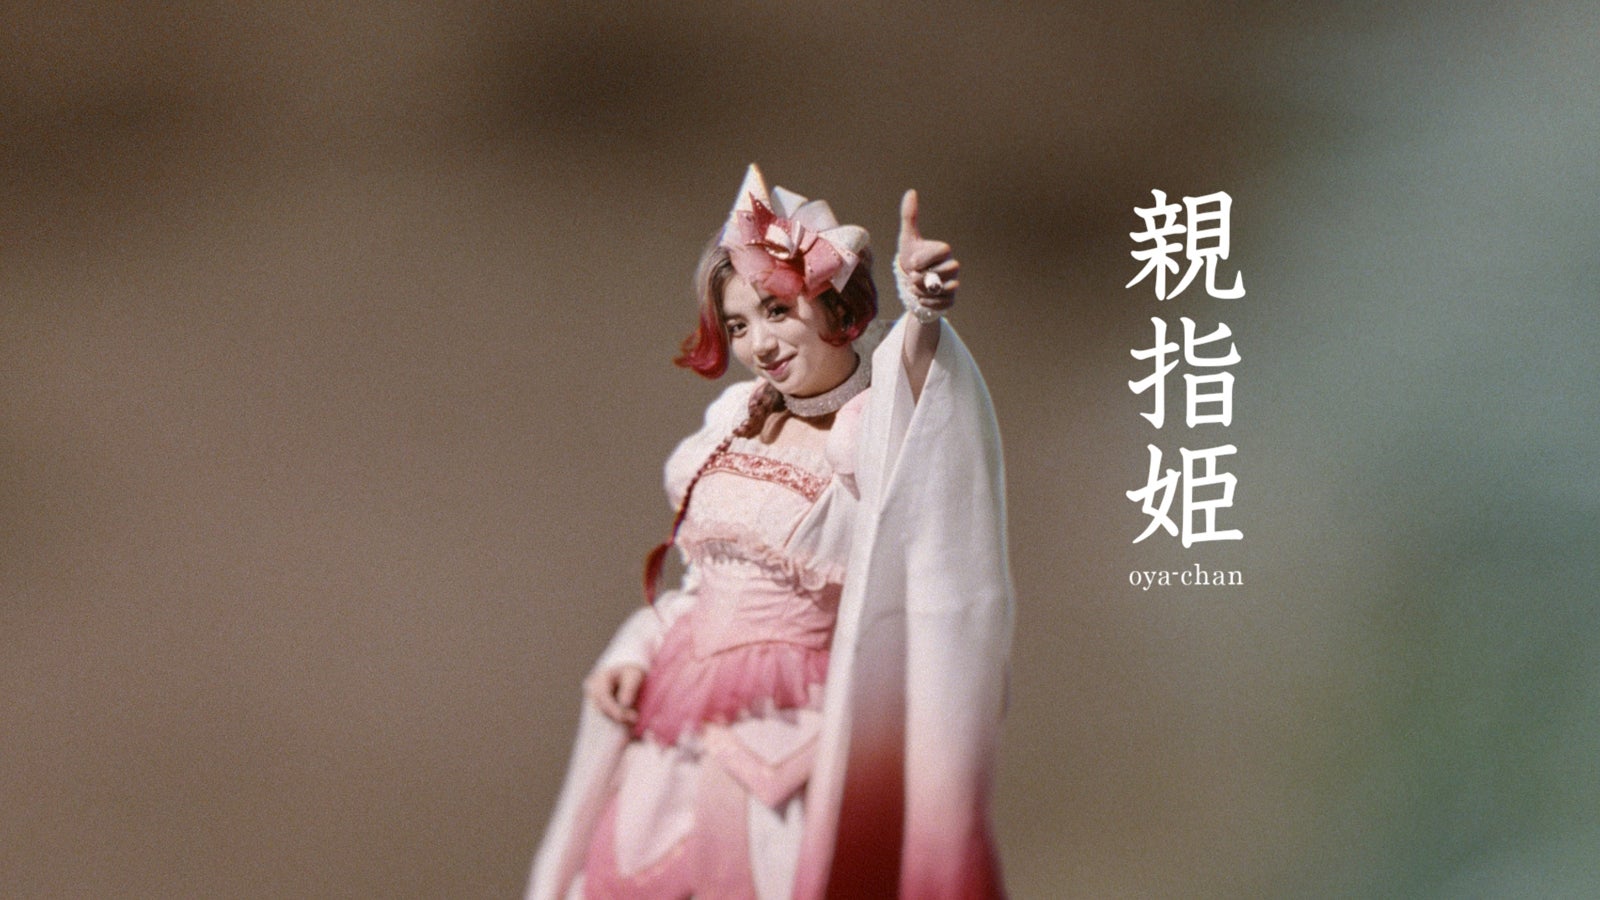 三太郎系列廣告 拇指公主 真面目公開 池田エライザ飾演三位公主媽媽 Atc Taiwan